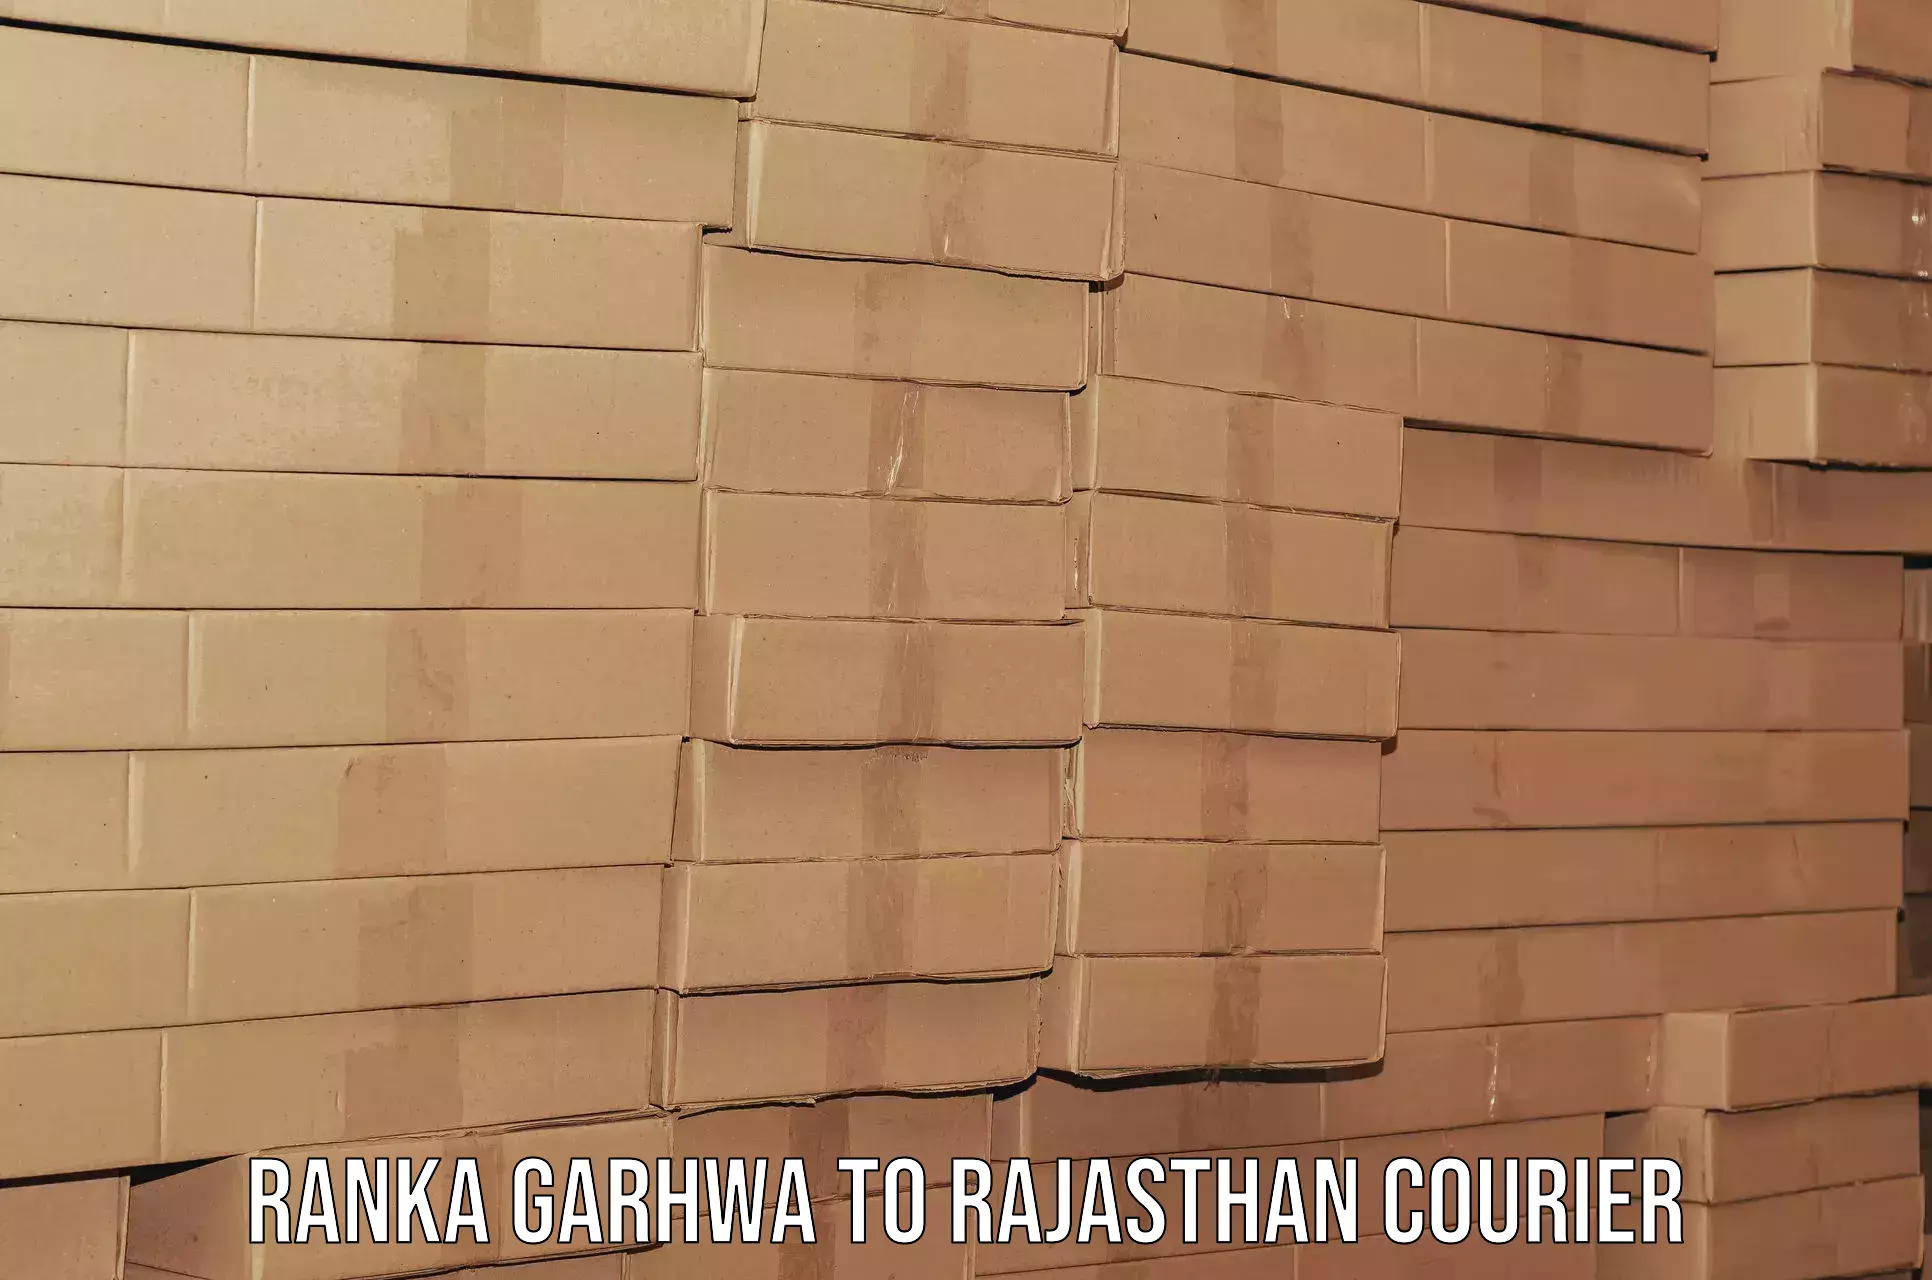 Residential furniture transport Ranka Garhwa to Mandalgarh